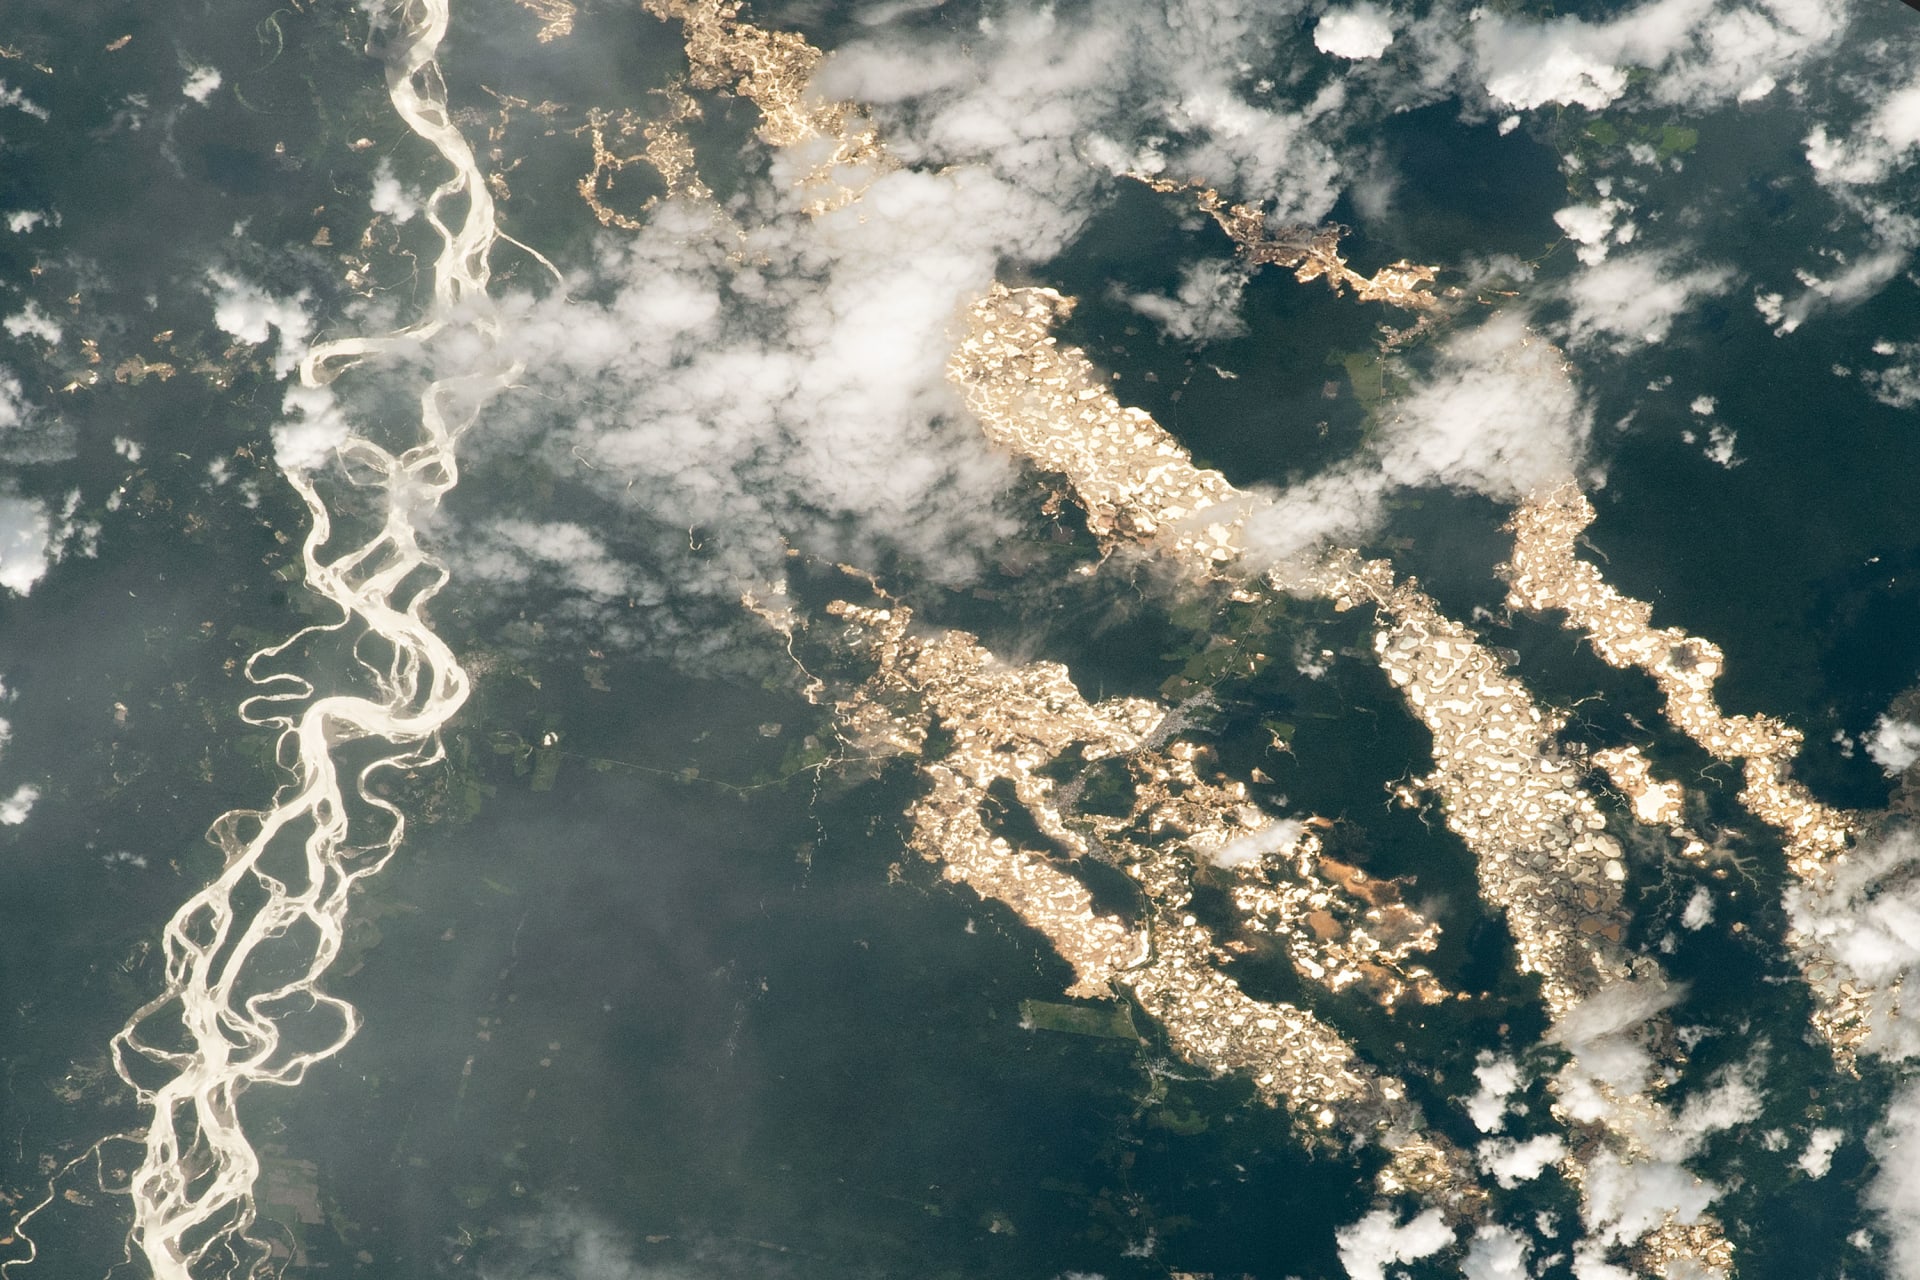 "ناسا" توثق أنهارا من "ذهب" في غابات الأمازون وهذه هي الحقيقة ورائها